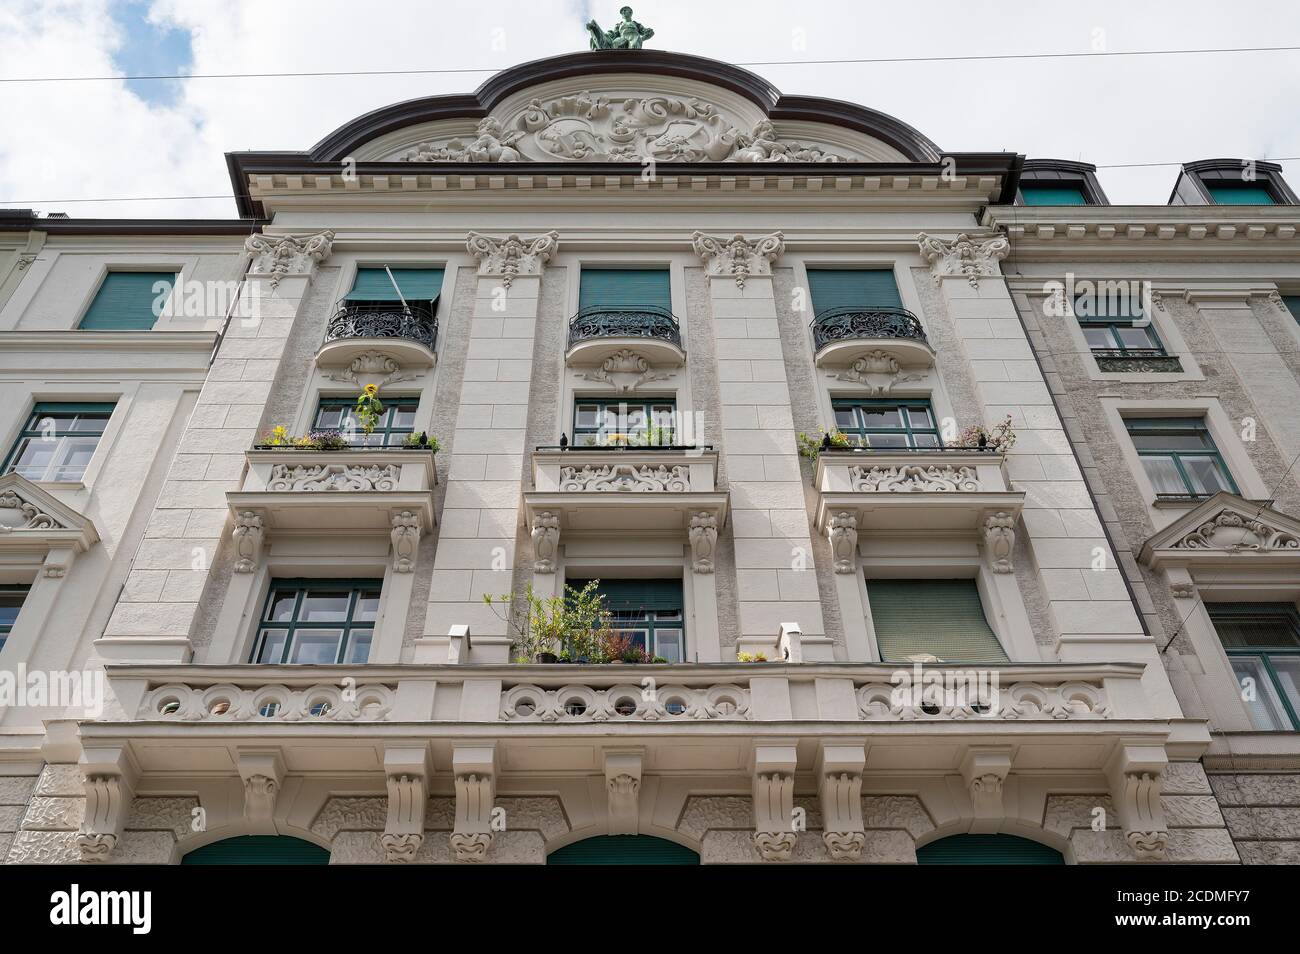 Baroque facade with green balconies, Steinsdorfstr. Munich, Upper Bavaria, Bavaria, Germany Stock Photo